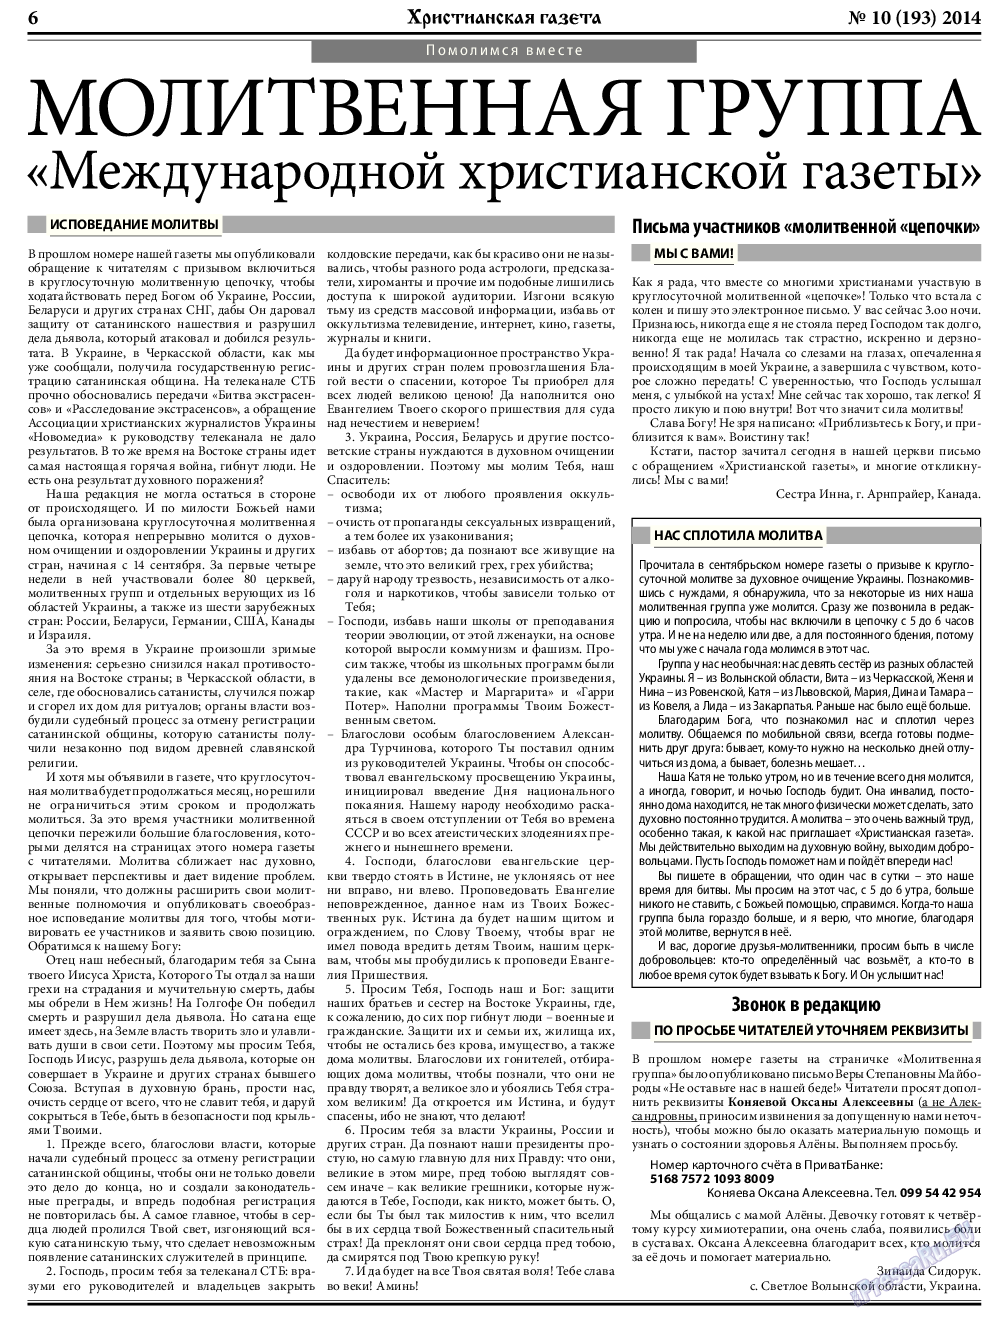 Христианская газета, газета. 2014 №10 стр.6